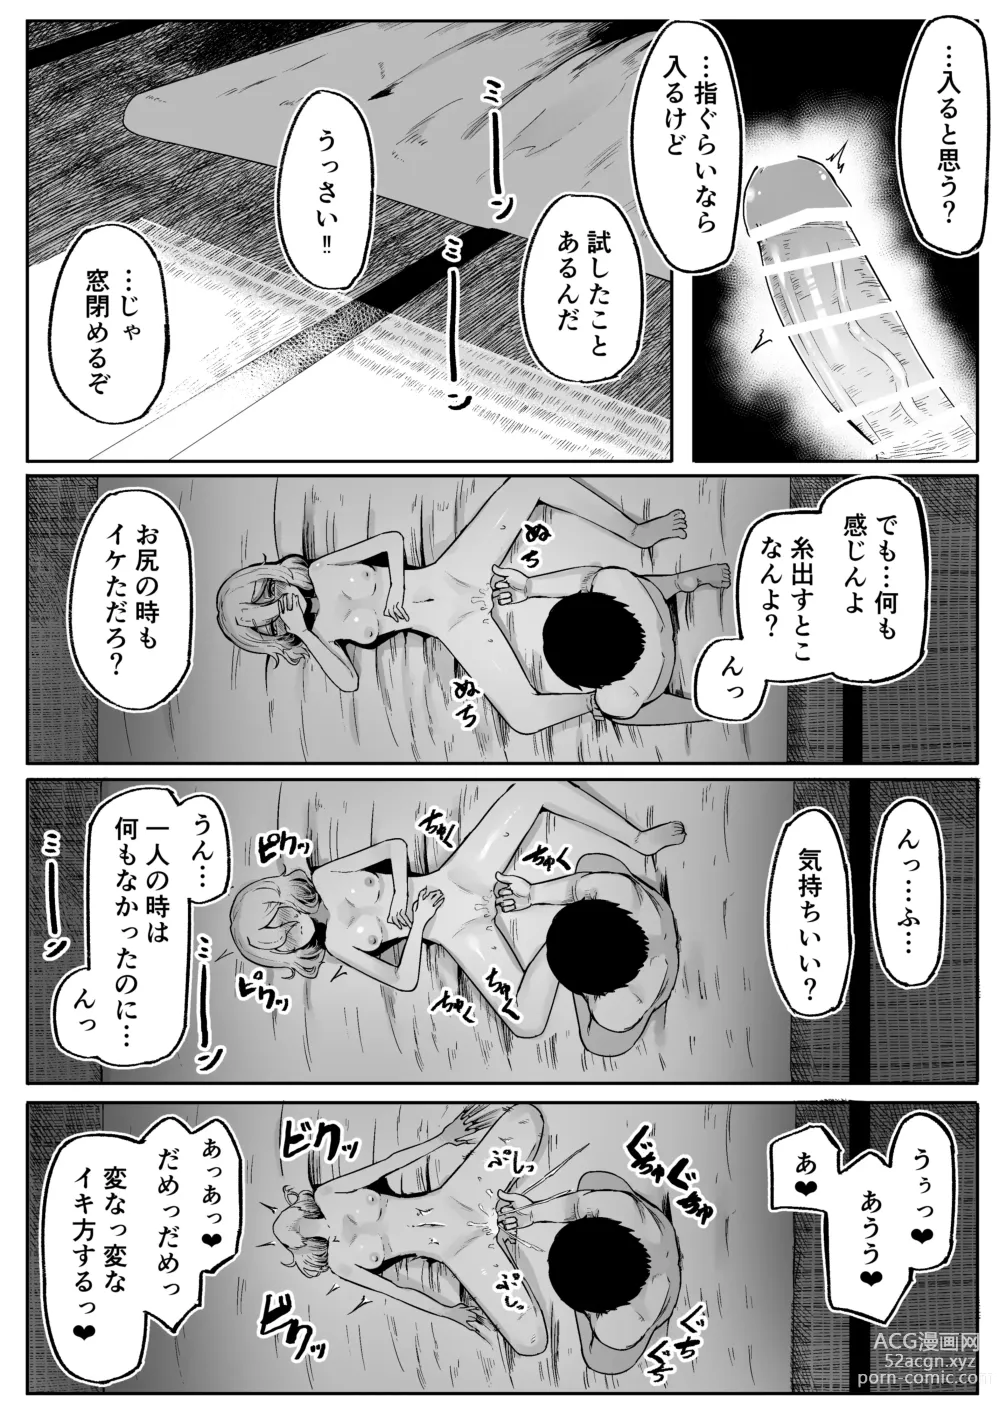 Page 44 of doujinshi Kamisama to Kodomo ga Dekiru made